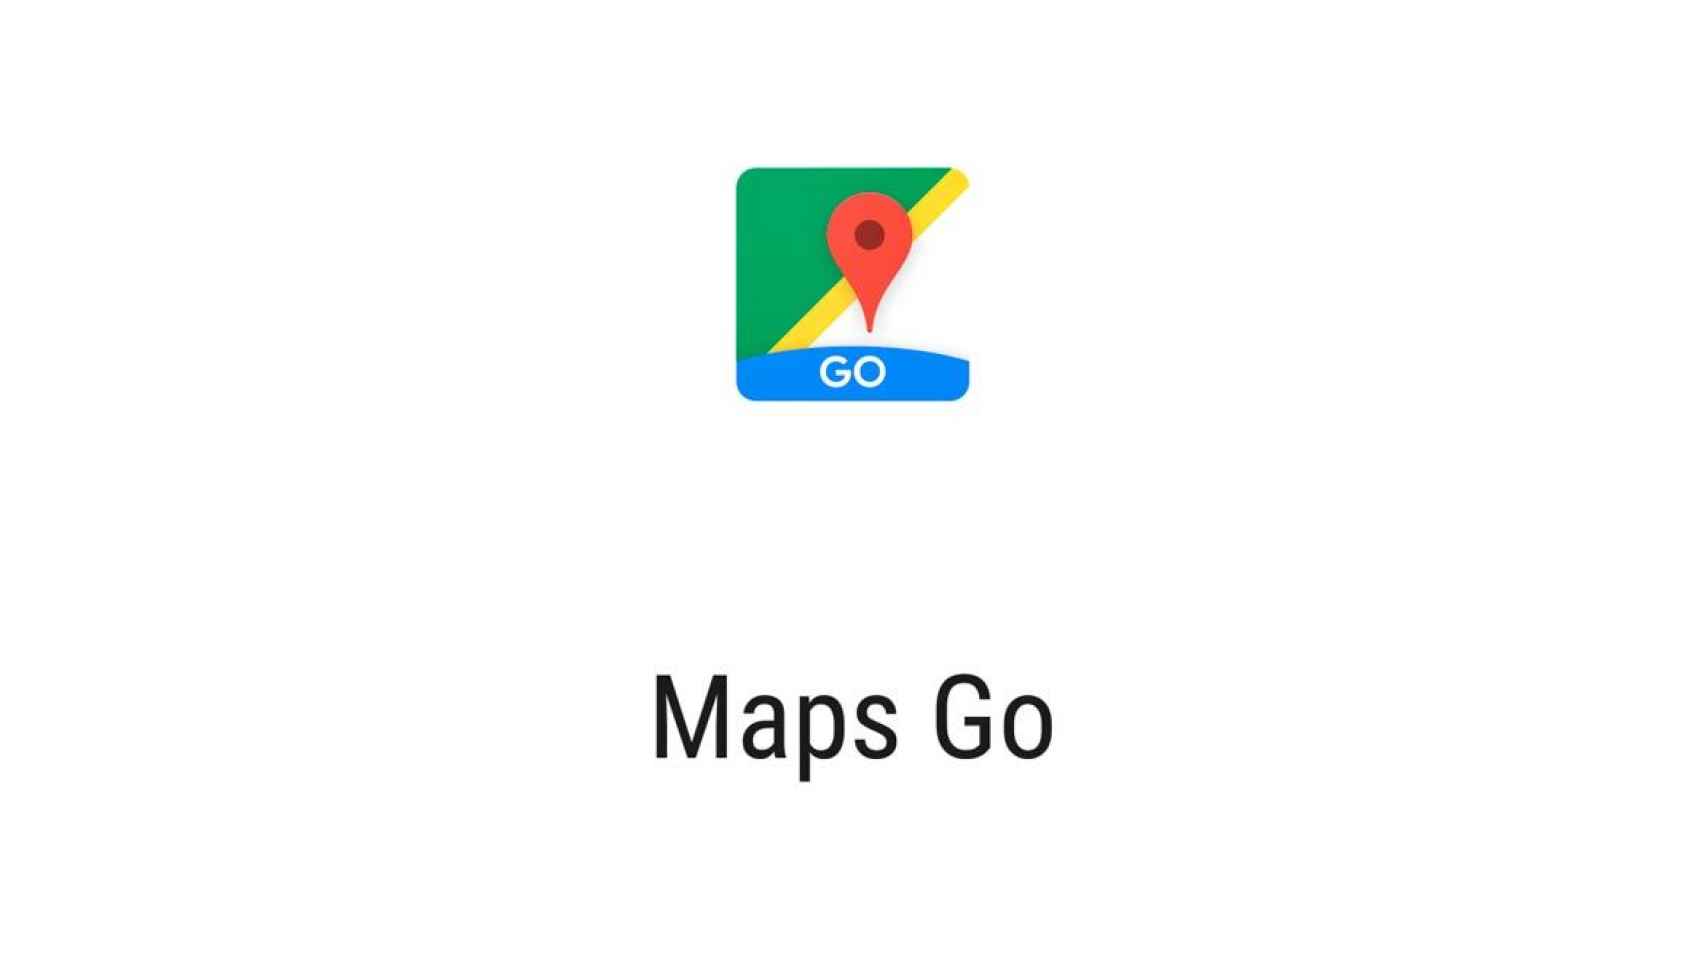 Descarga Google Maps Go, la aplicación de mapas más ligera [APK]